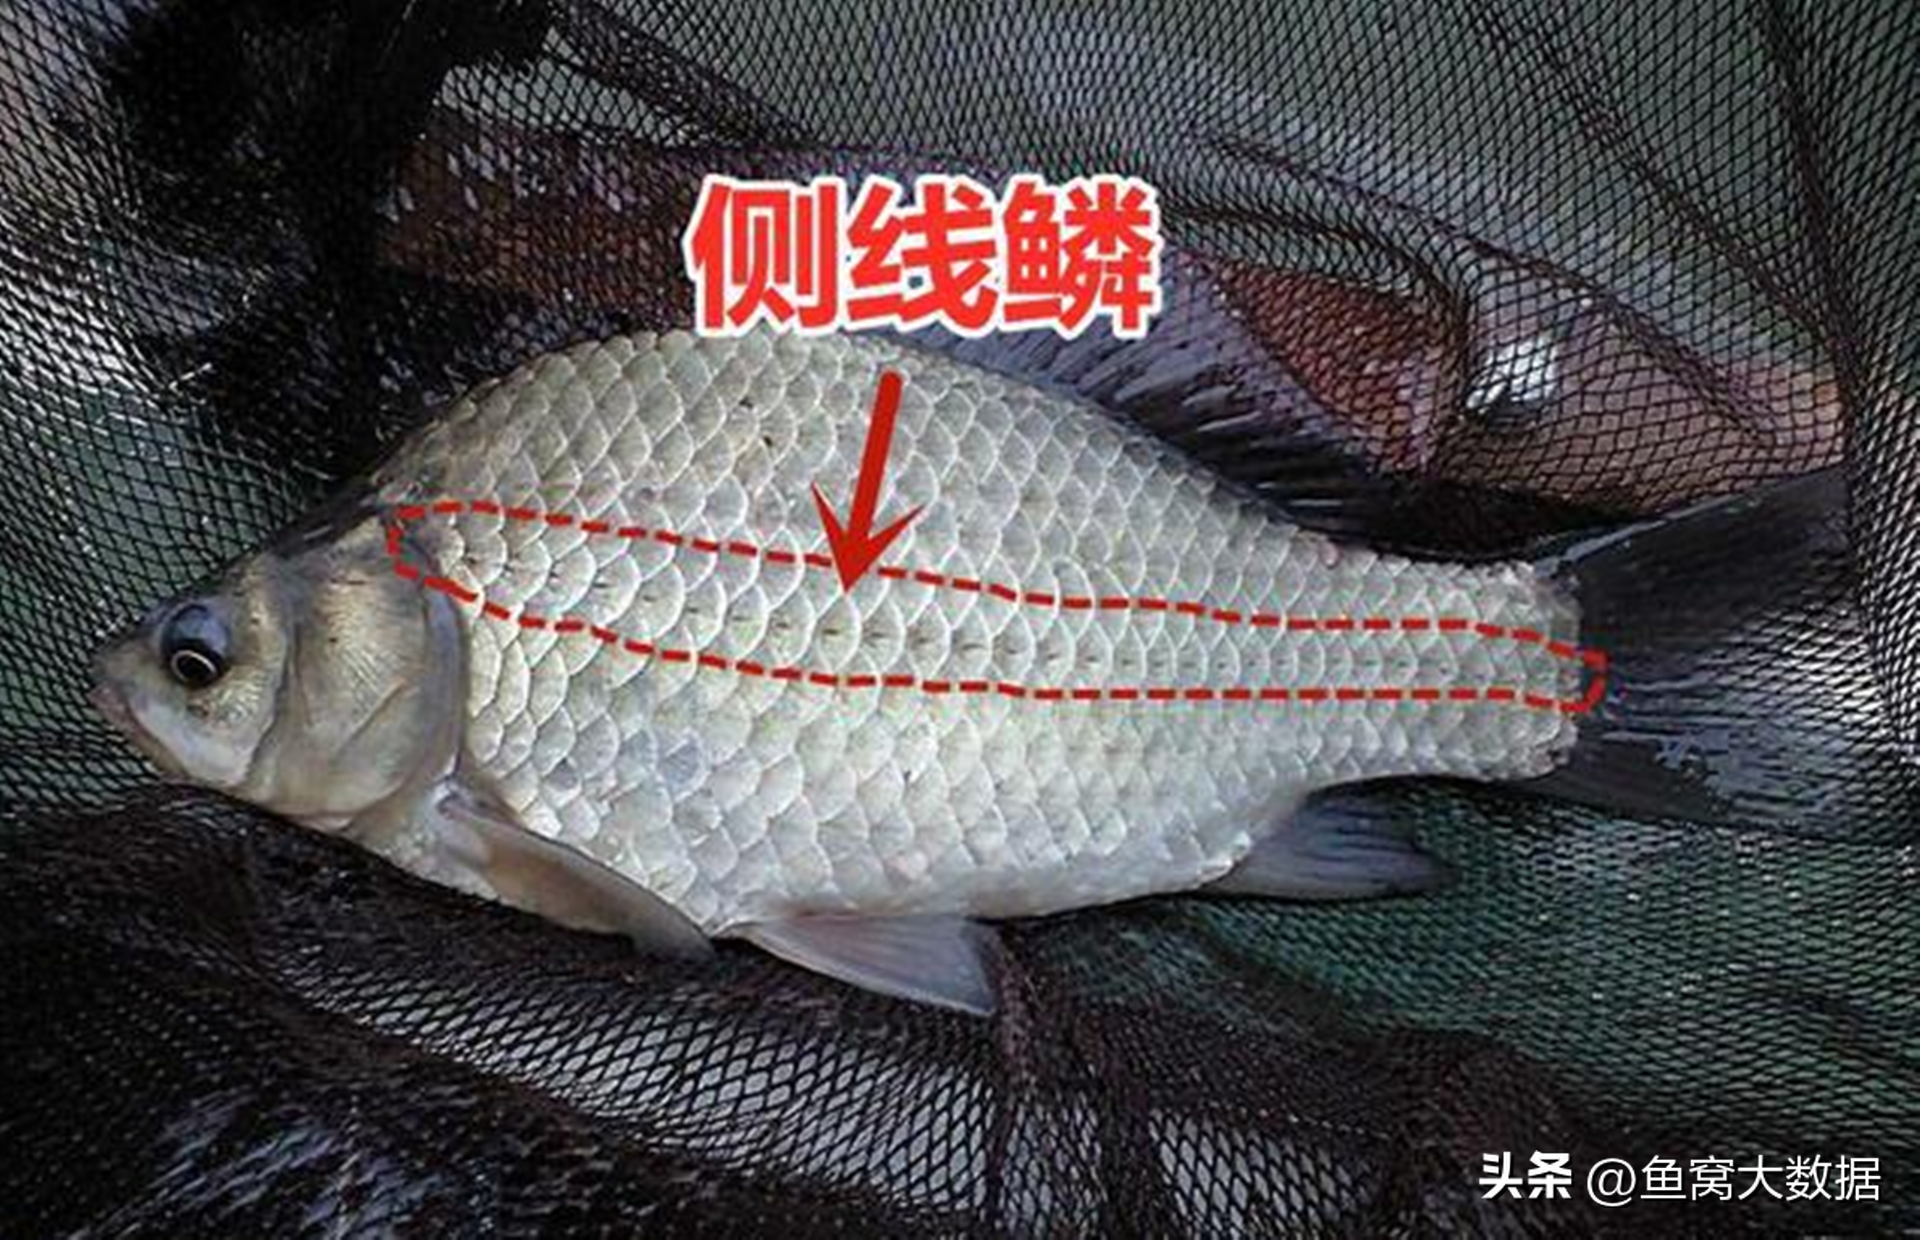 江苏镇江钓鱼人钓到6斤重的“大鲤鱼”，经过鉴别是一条大鲫鱼